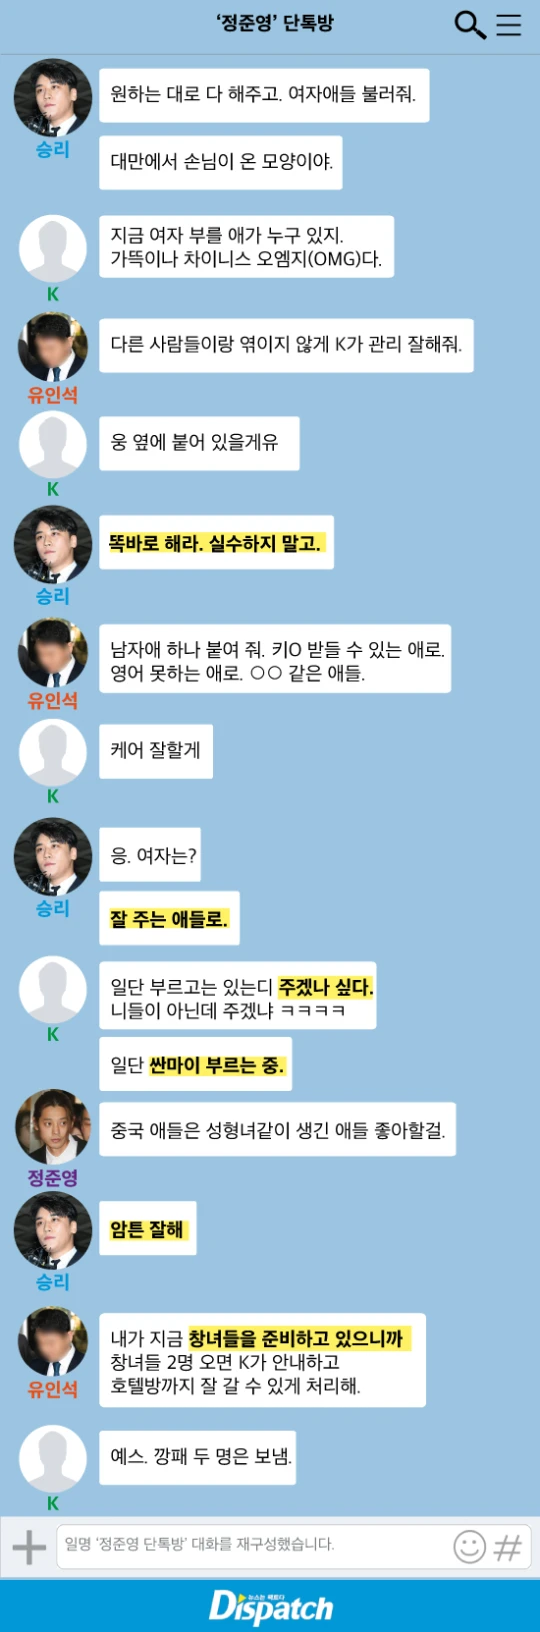 버닝선 근황] 승리 카톡 내용 공개 검찰은 징역 5년 구형